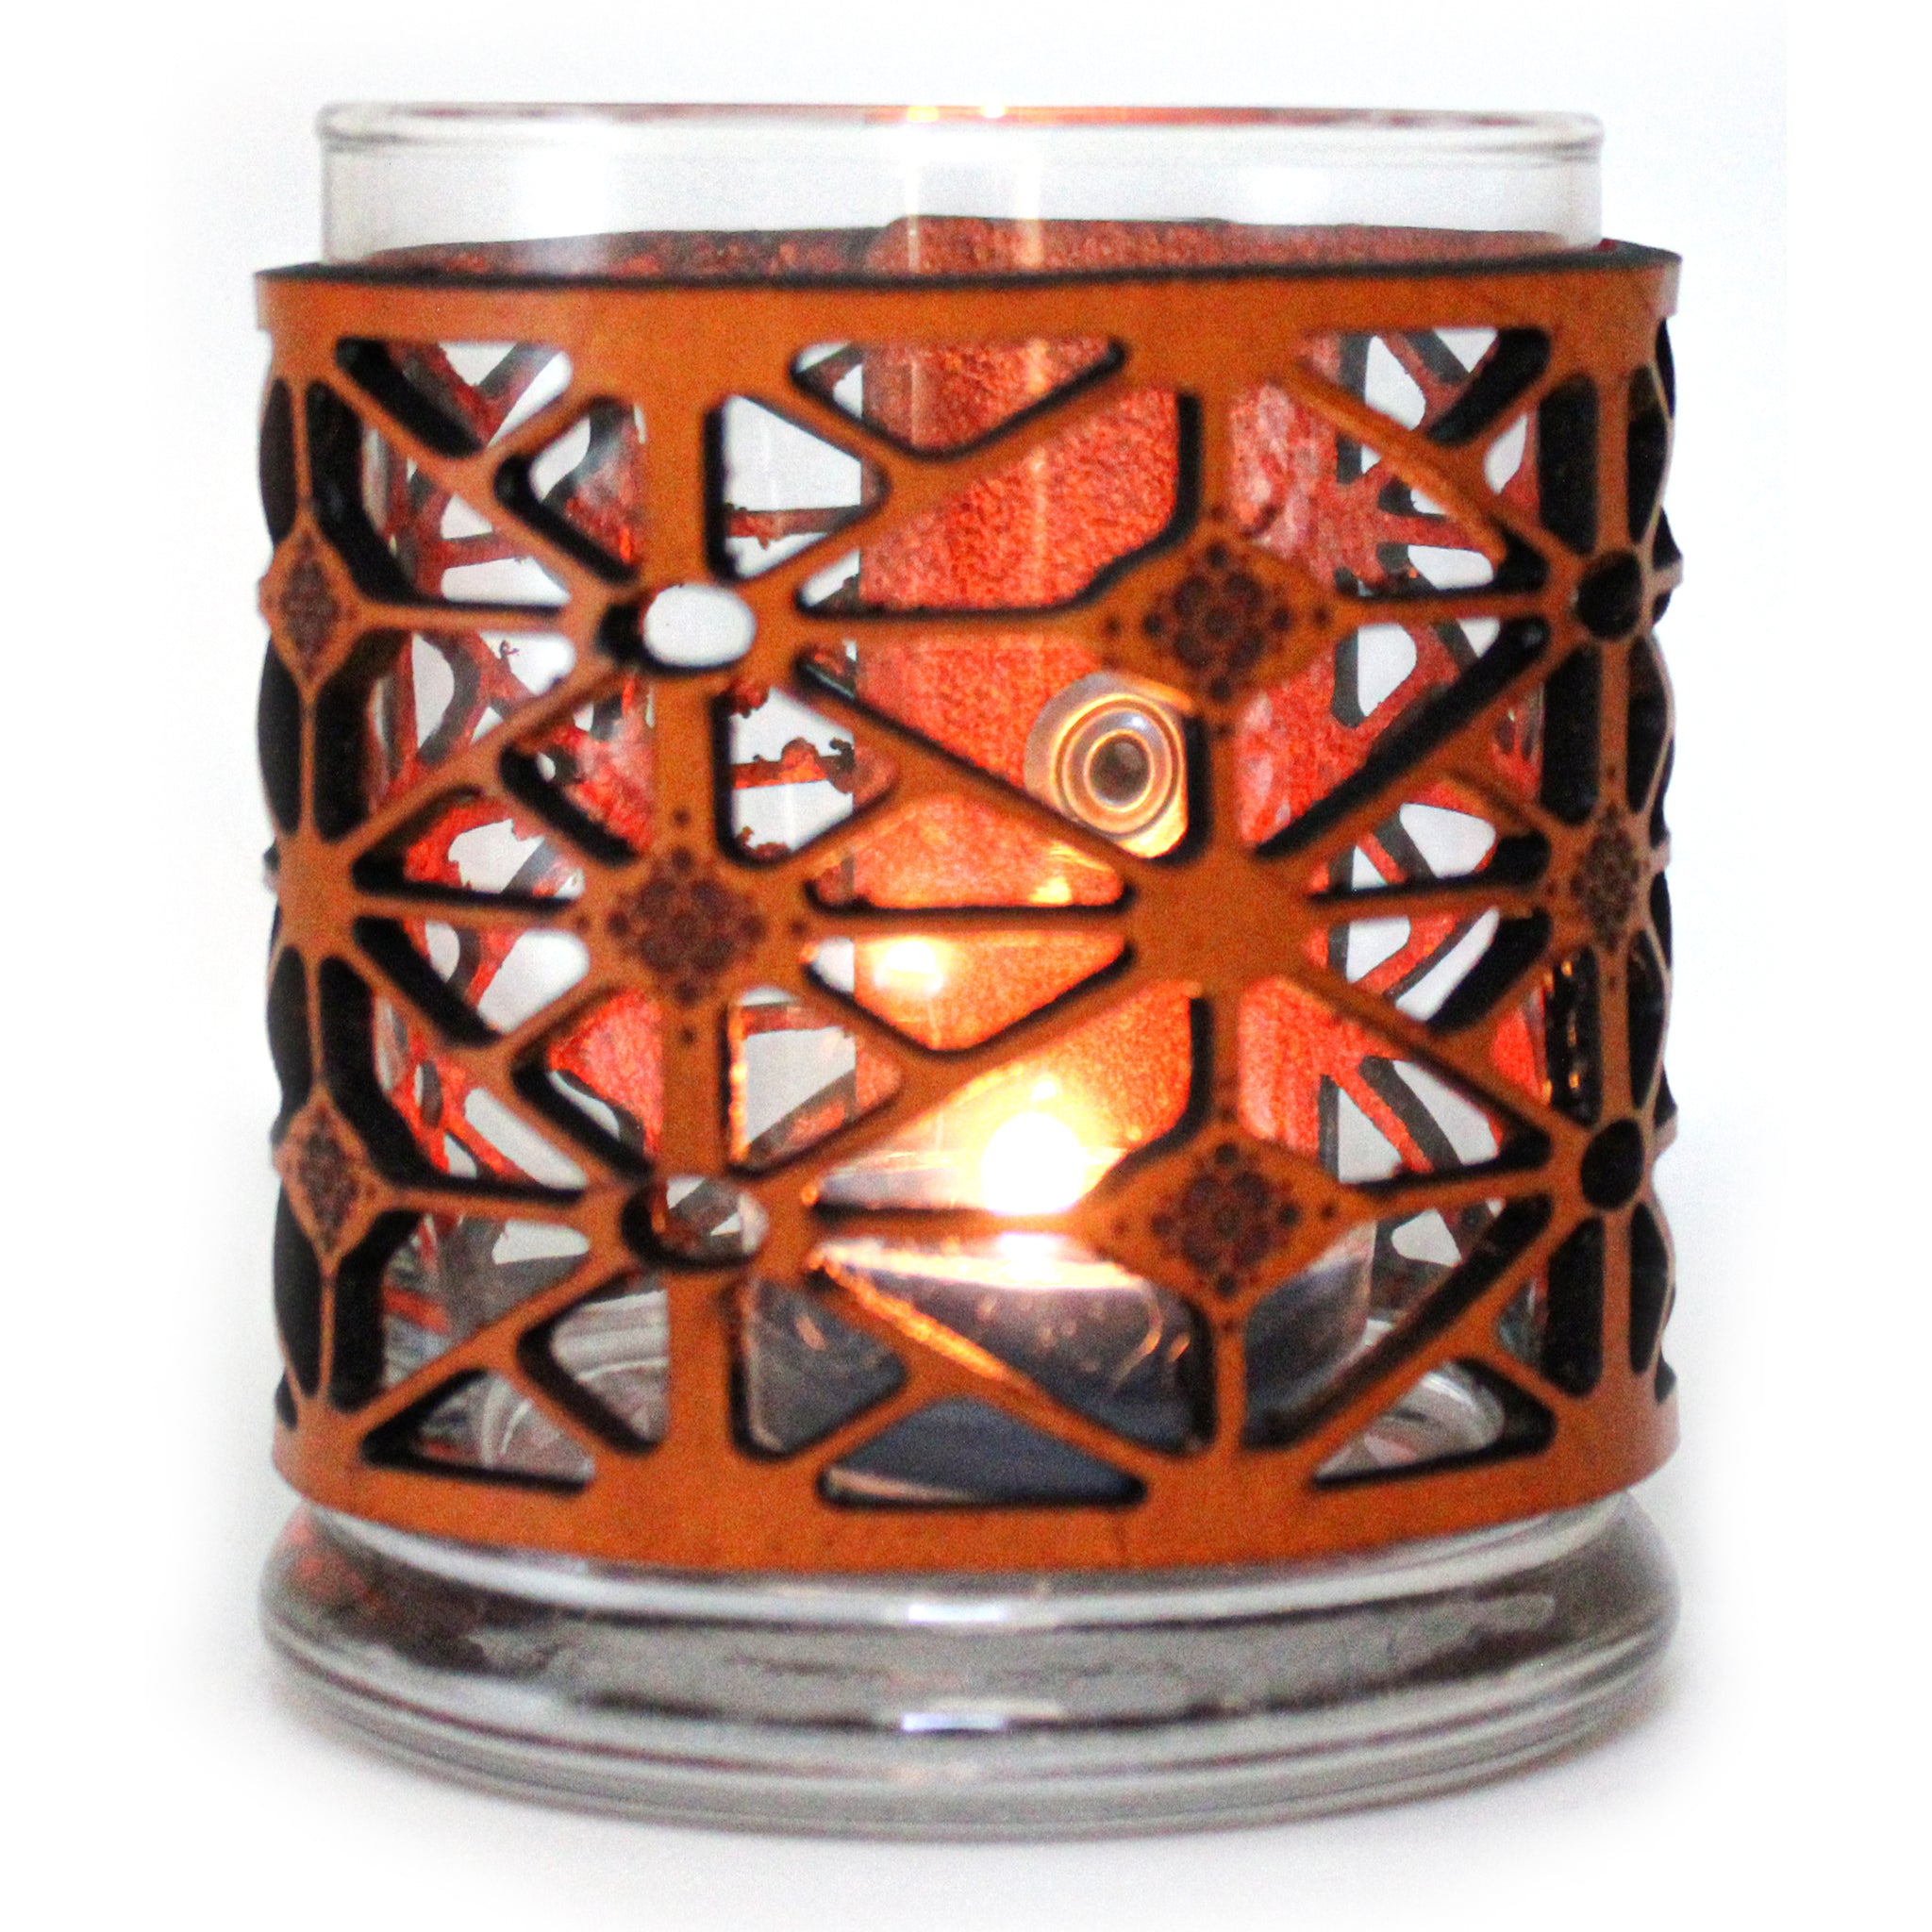 Leather Luminary Candle Set - Kaleidoscope